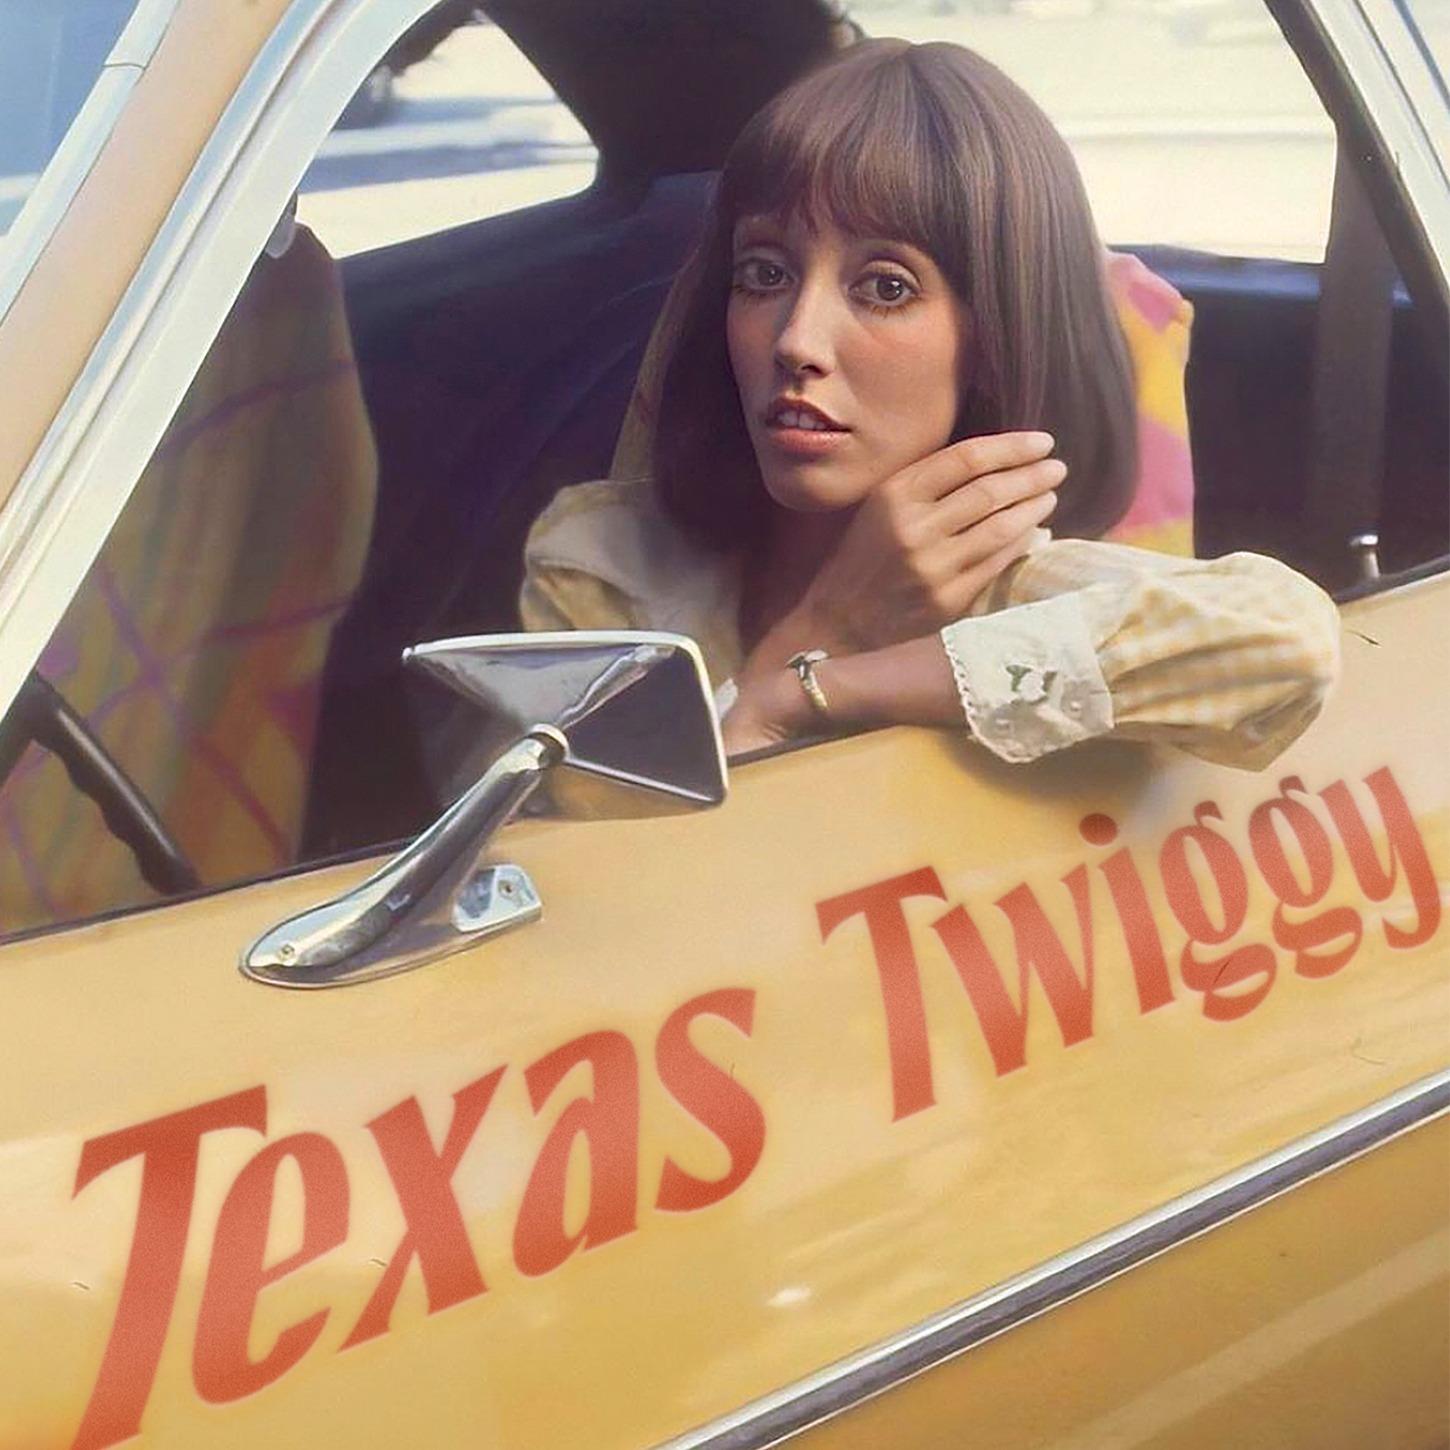 Texas Twiggy